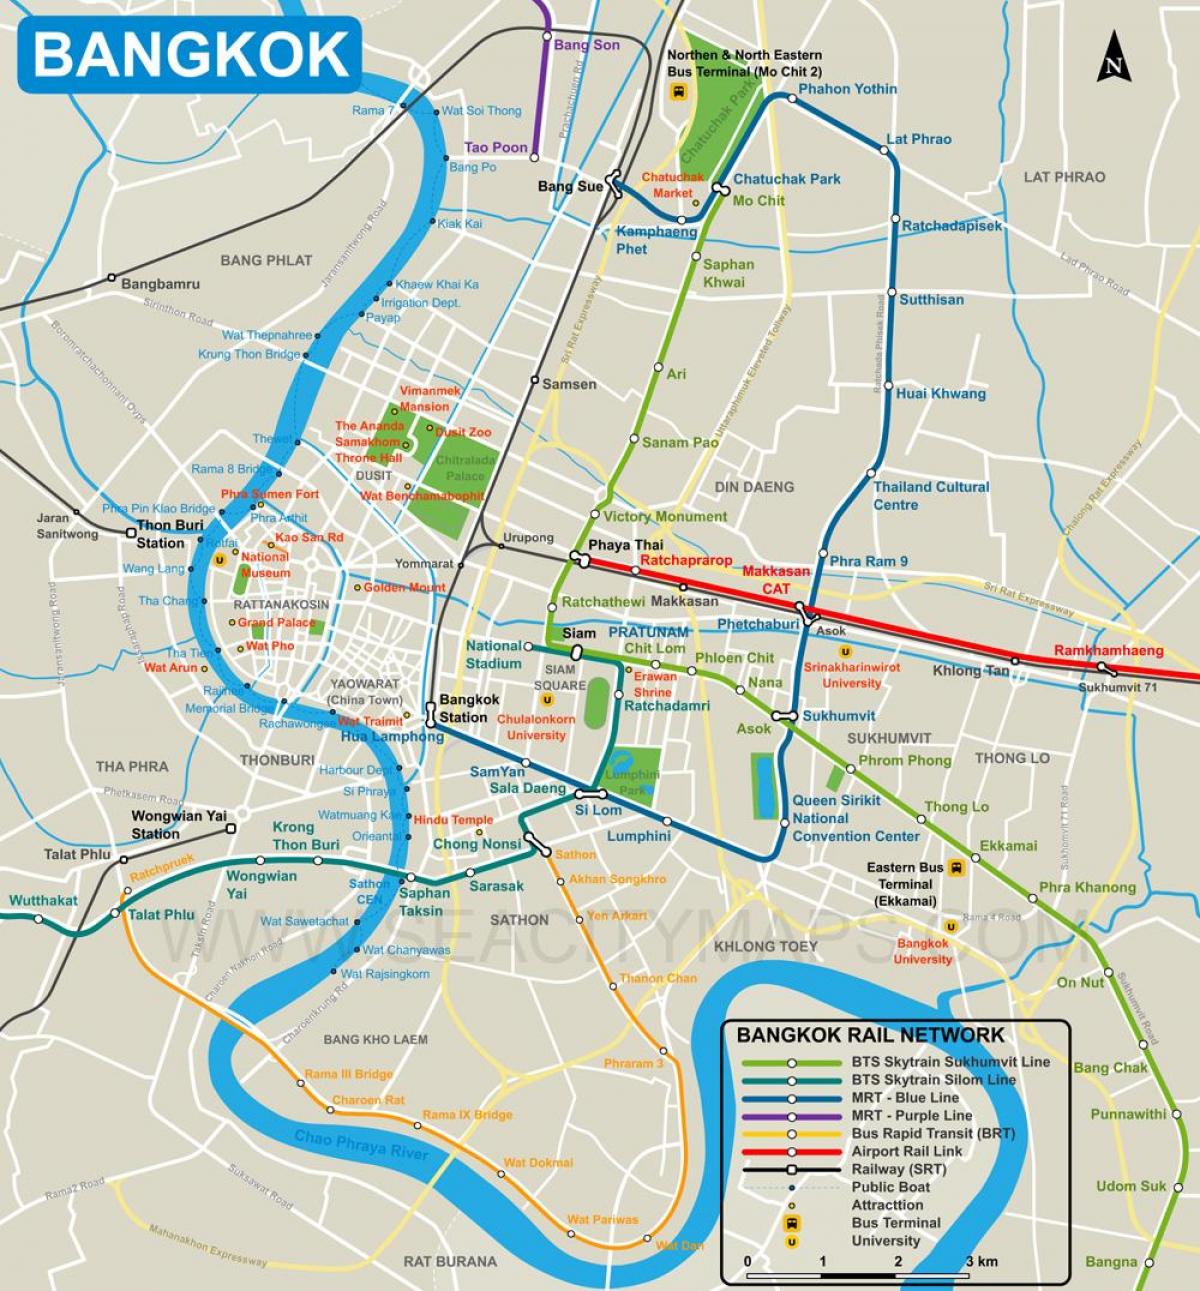 kort over bangkok city center